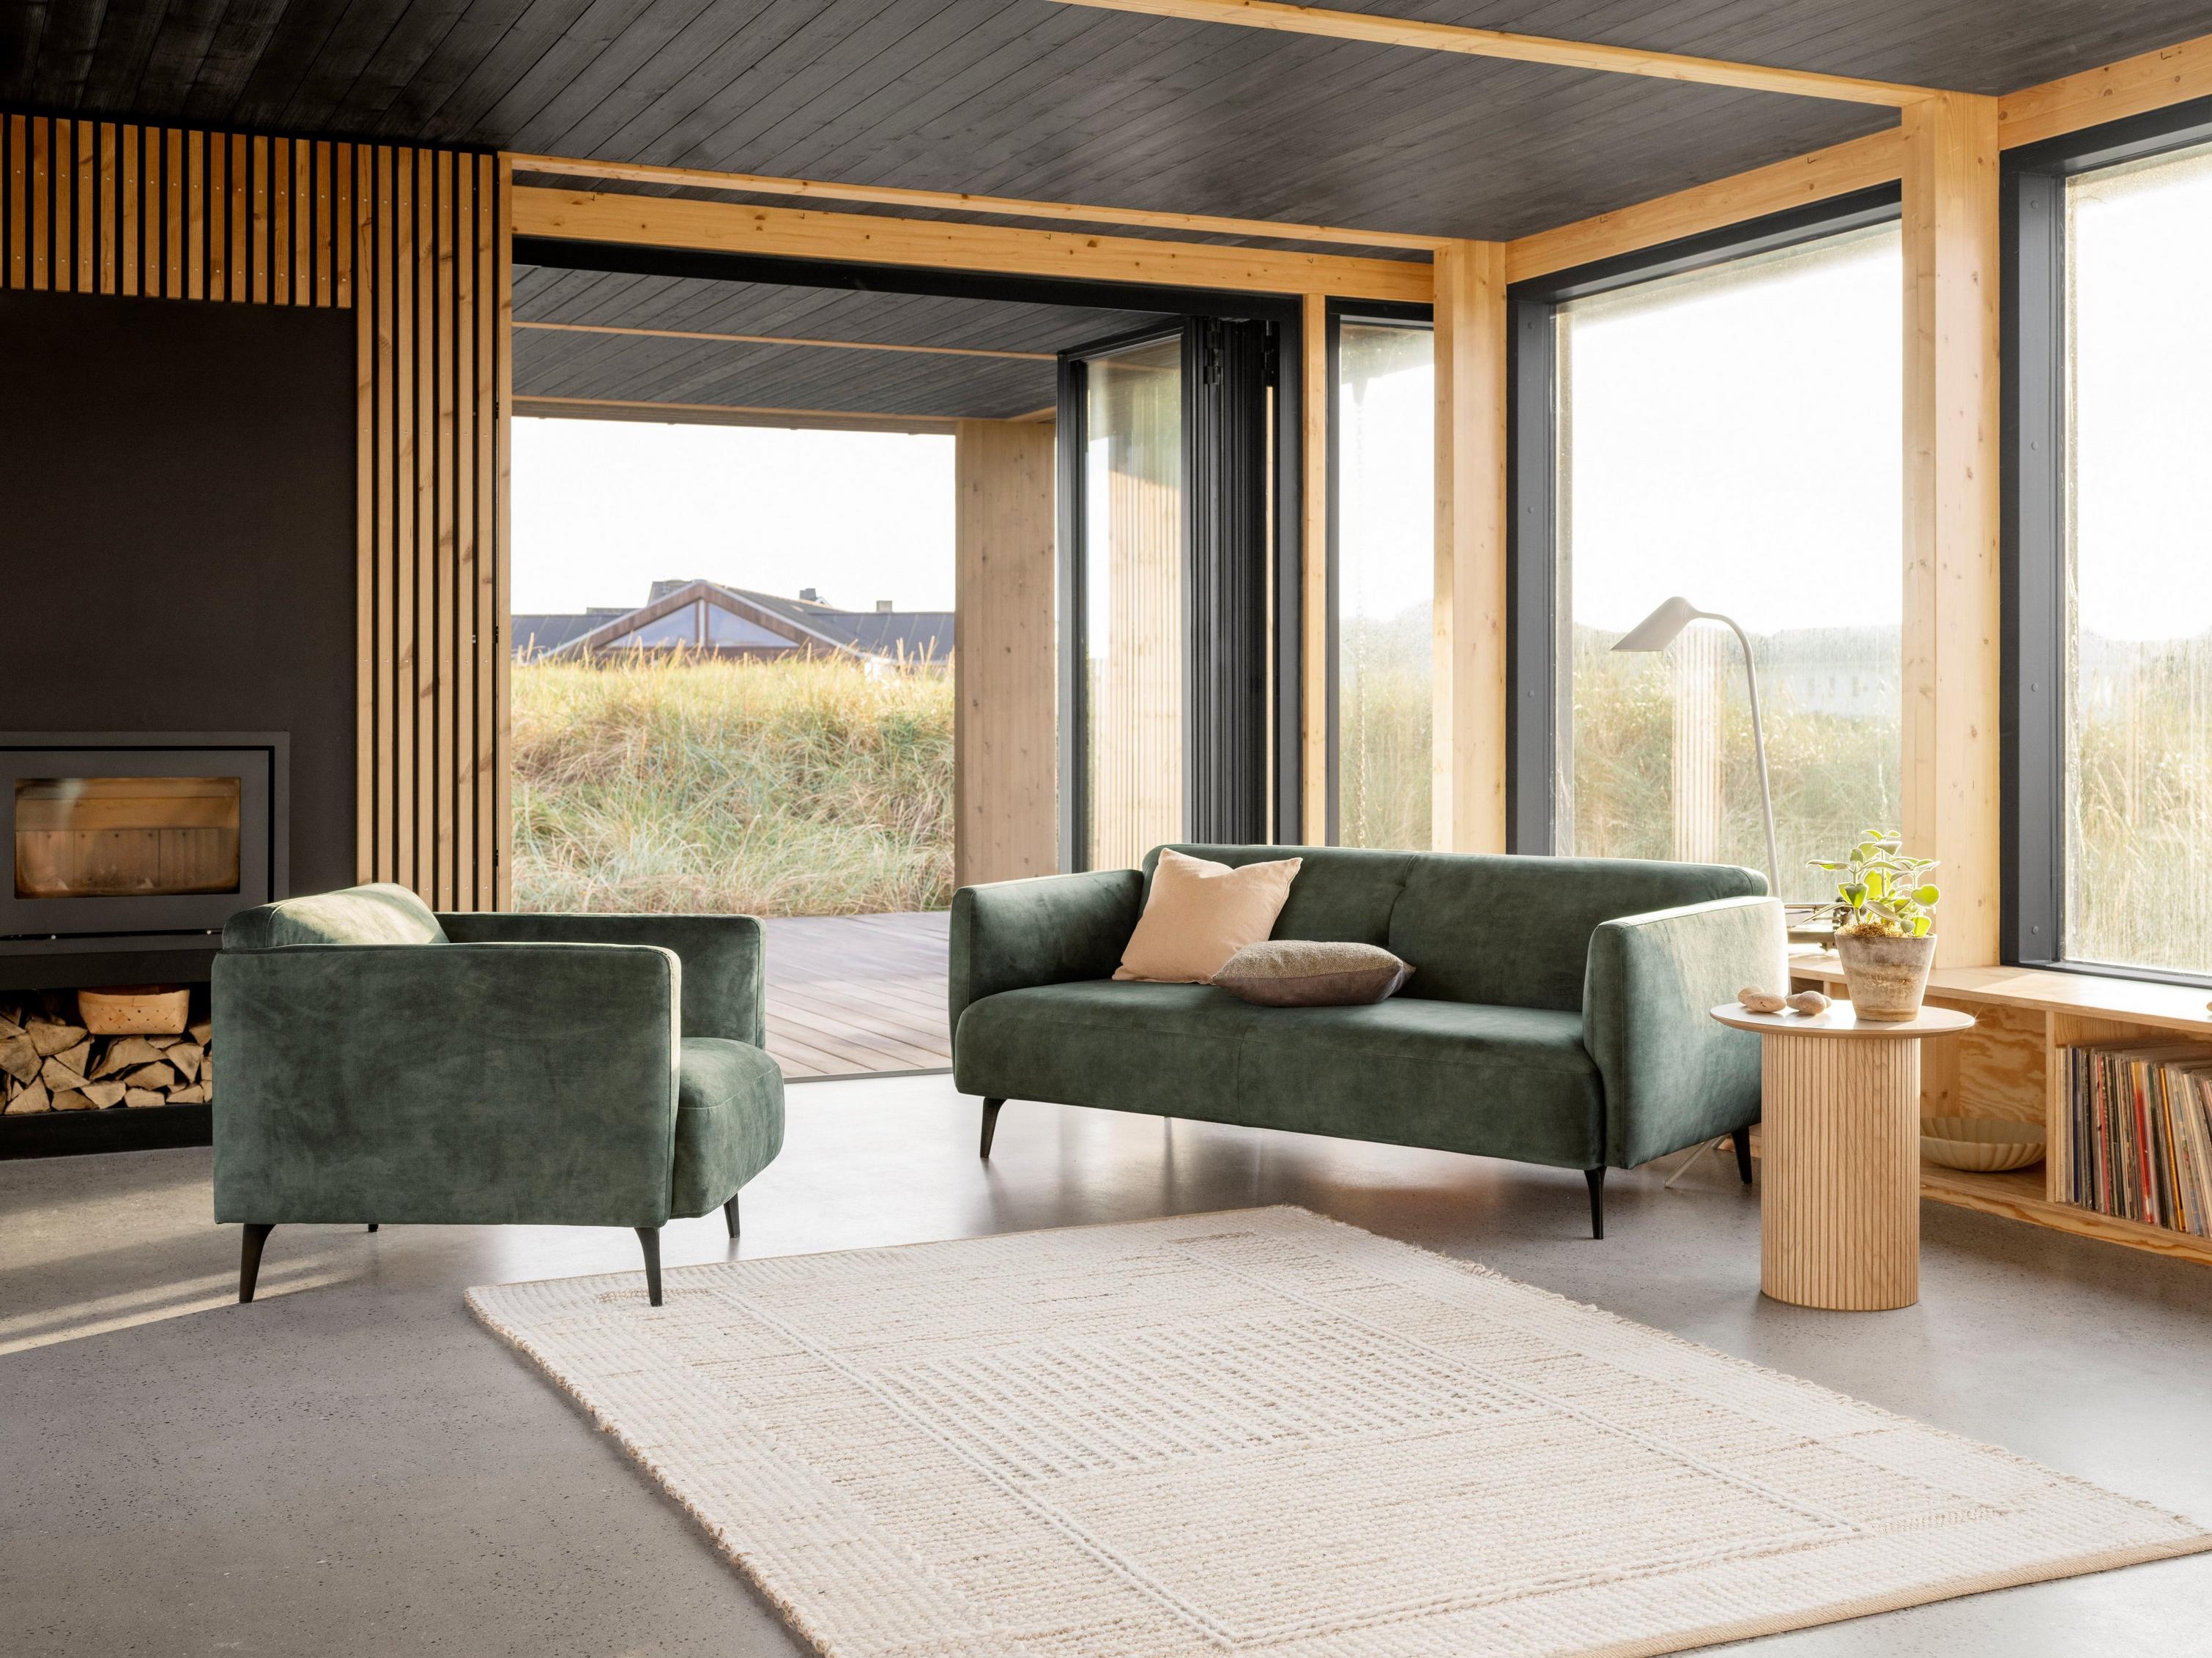 El elegante sofá Modena y la butaca a juego en tela Ravello verde cenizo junto a una chimenea en esta cálida sala.